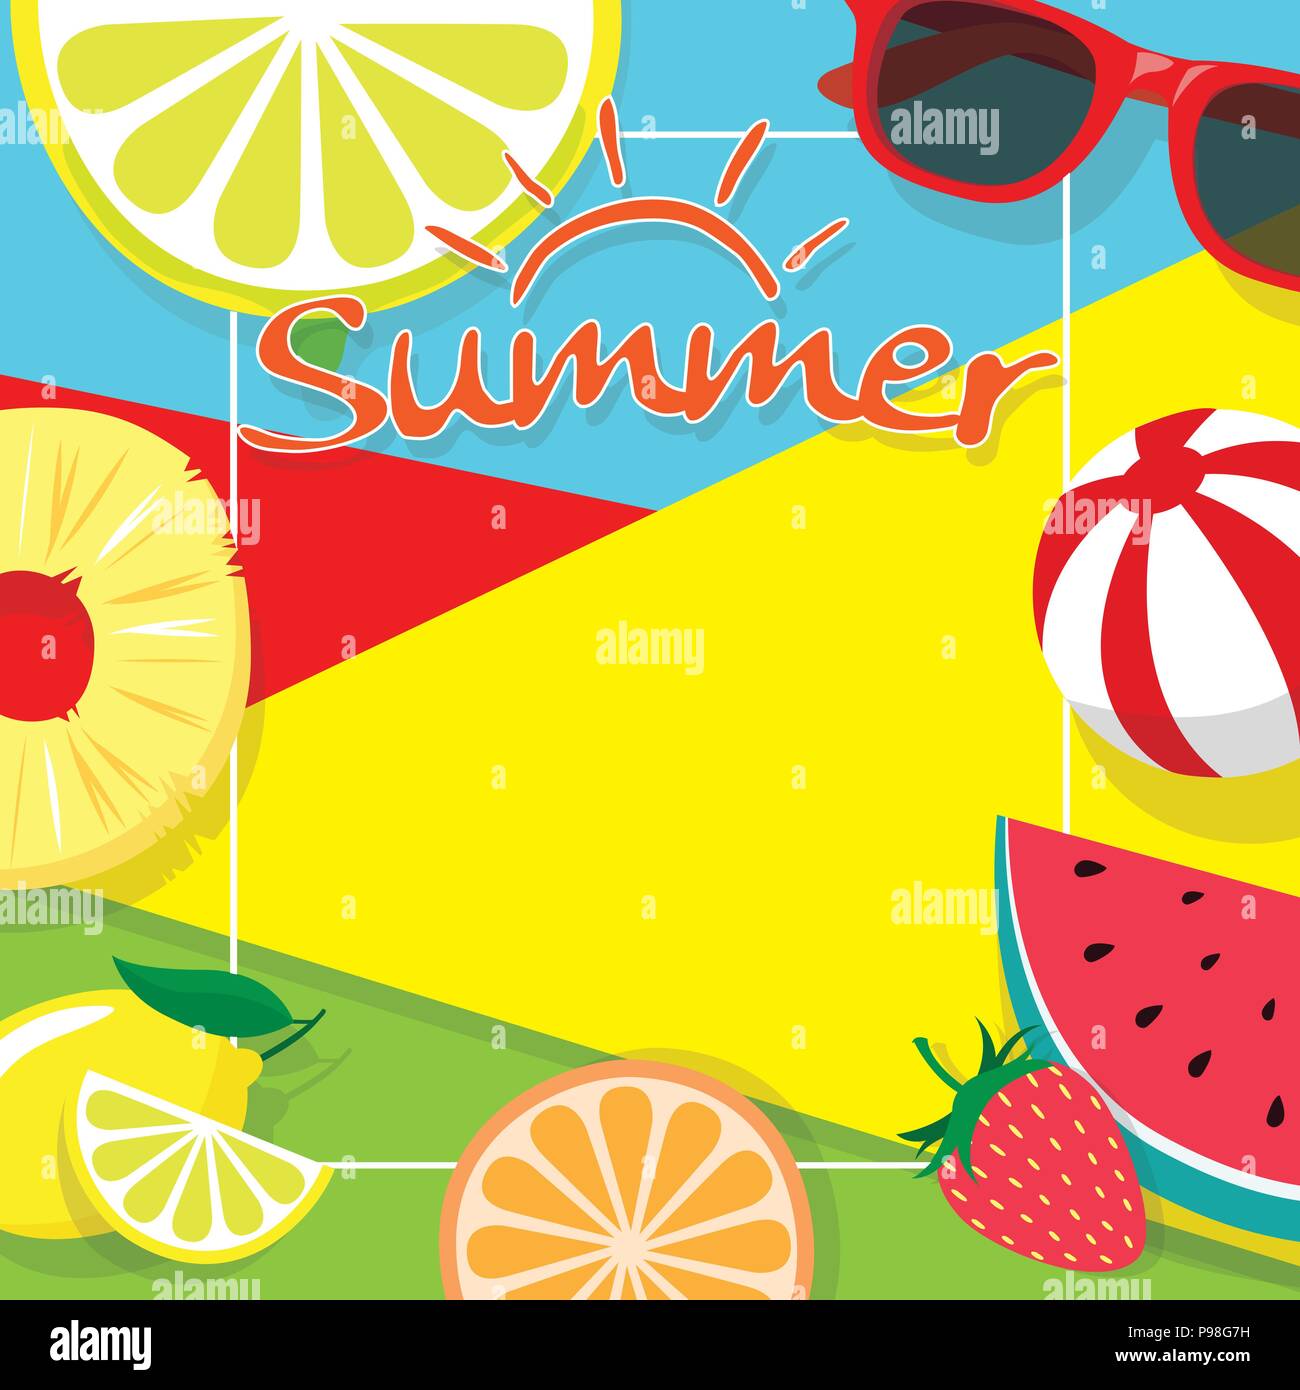 Farbenfrohe Sommer Thema Background Copy space Vorlage Banner mit Stücken von tropischen Früchten beach ball und Sonnenbrille. Vektor Sommer Hintergrund für Bann Stock Vektor